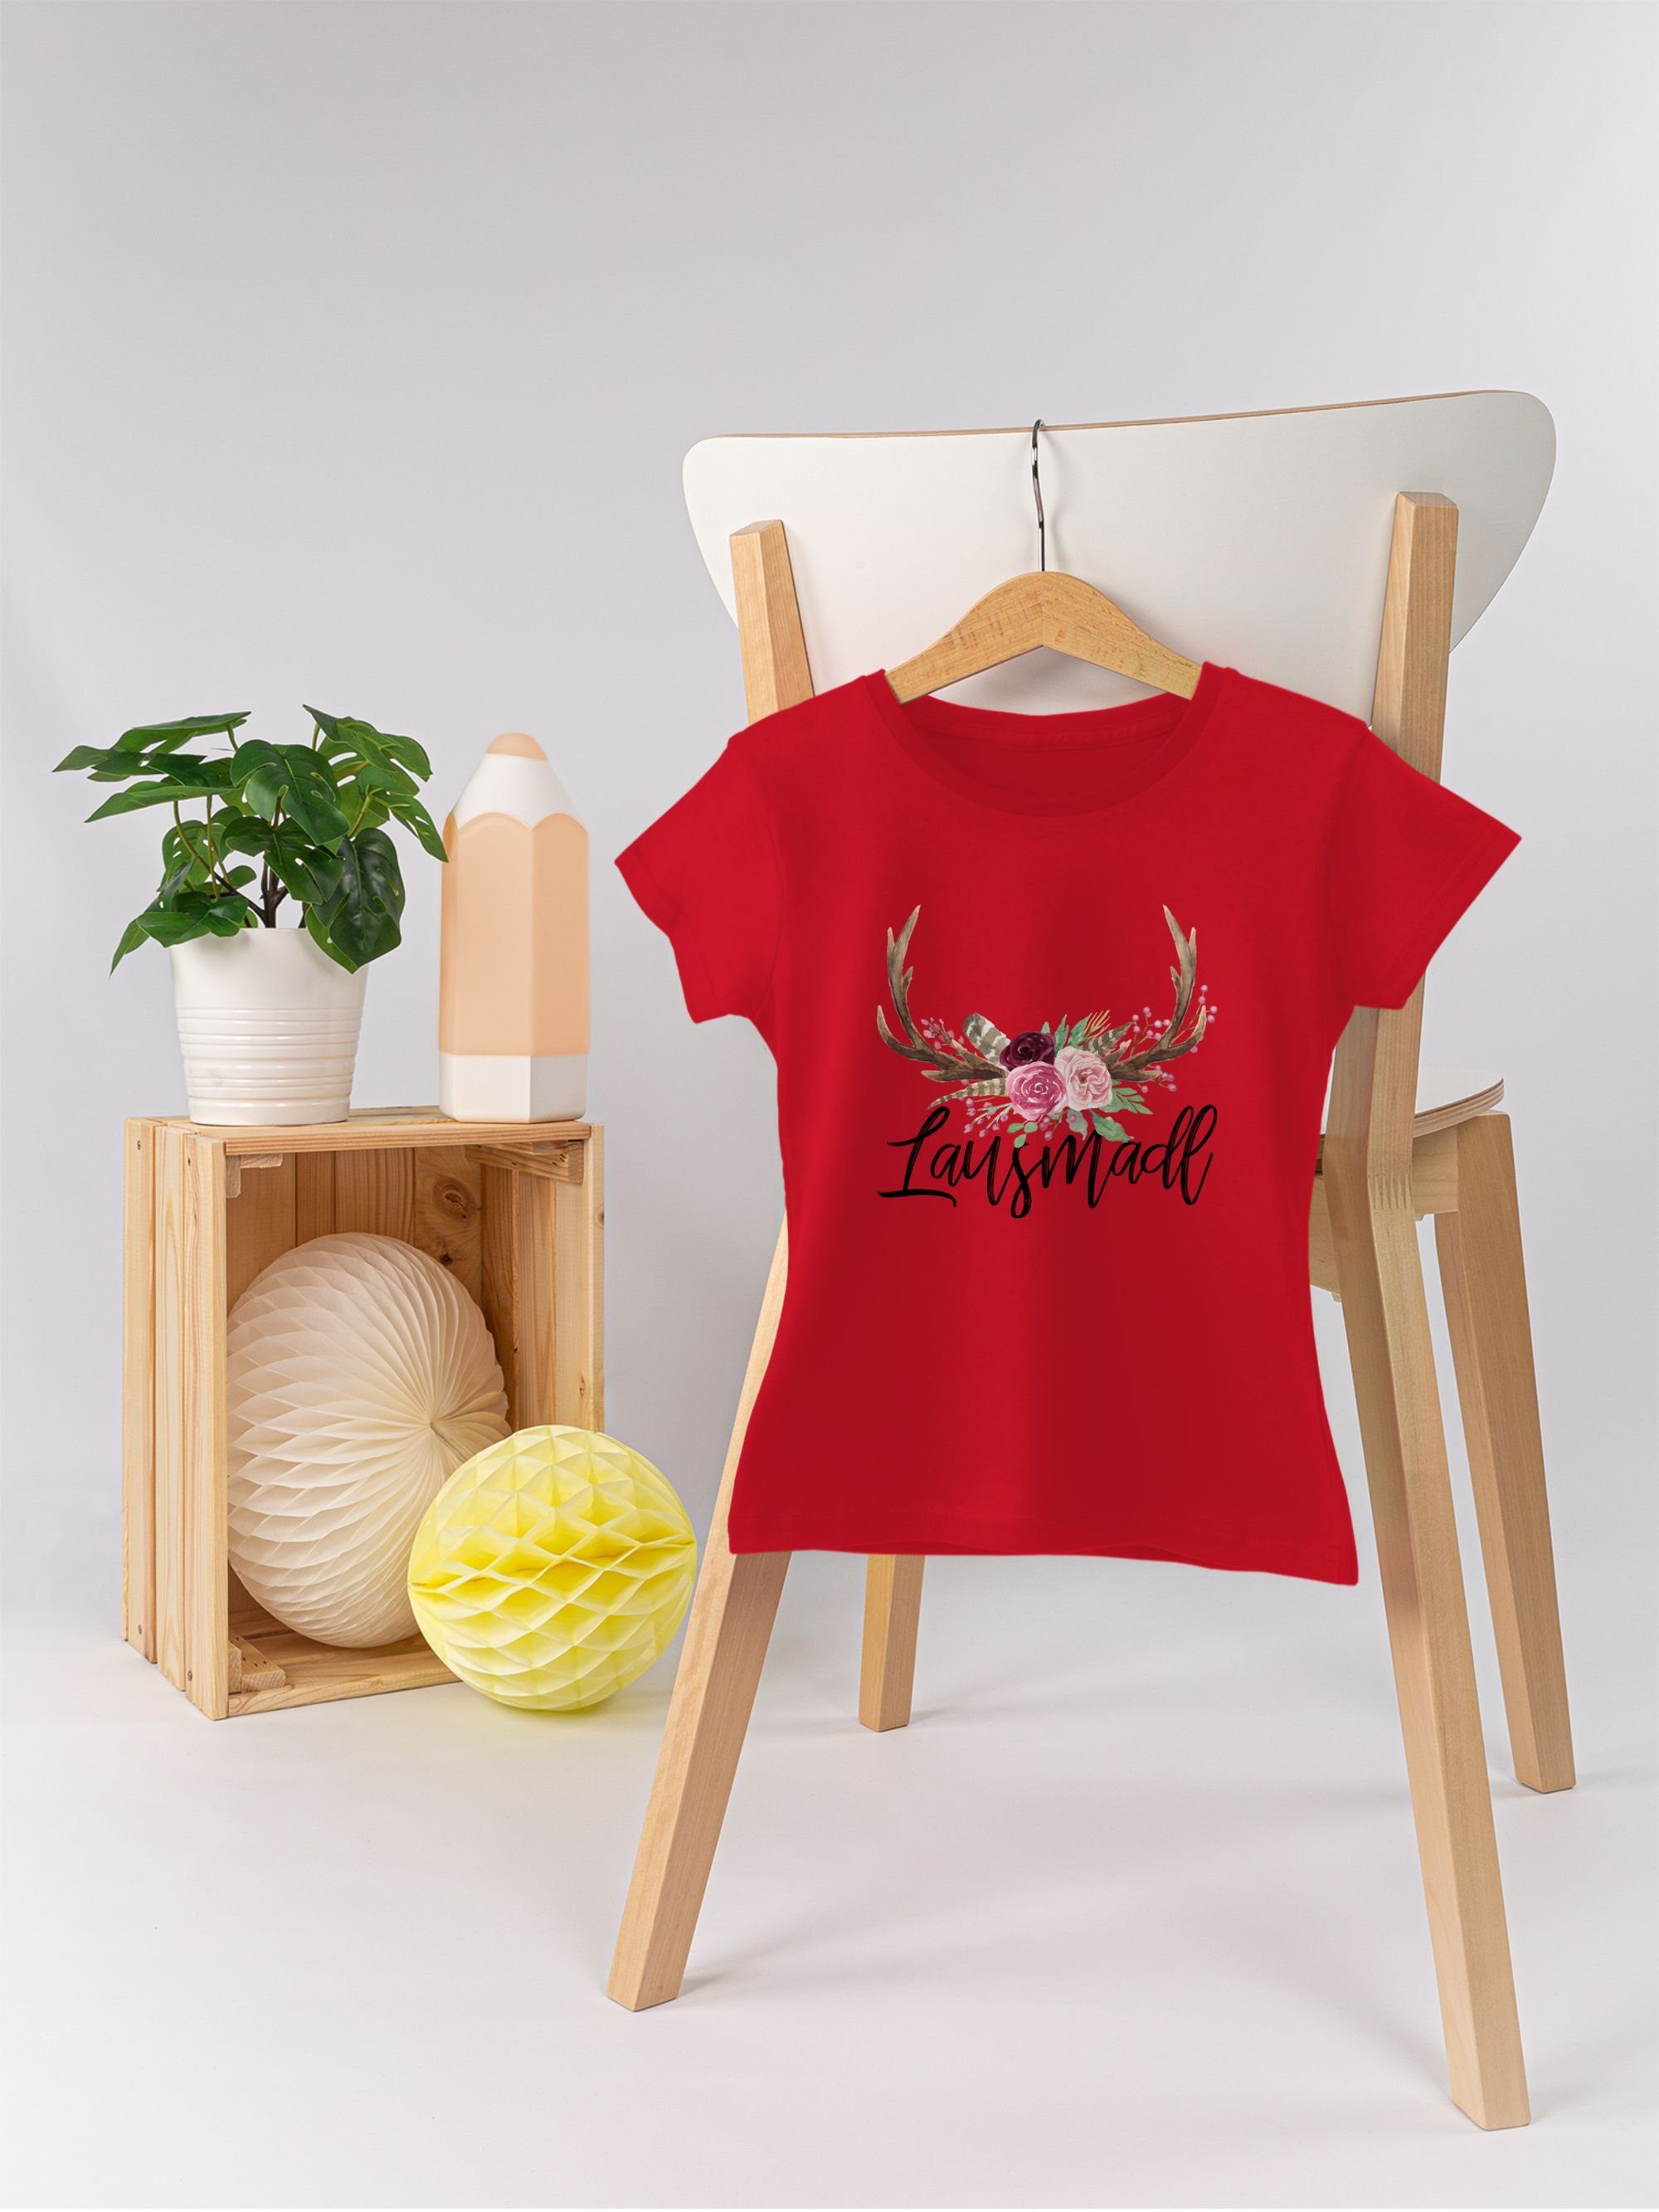 Hirschgeweih T-Shirt Rot Mode Oktoberfest für Shirtracer Outfit 3 Kinder Lausmadl